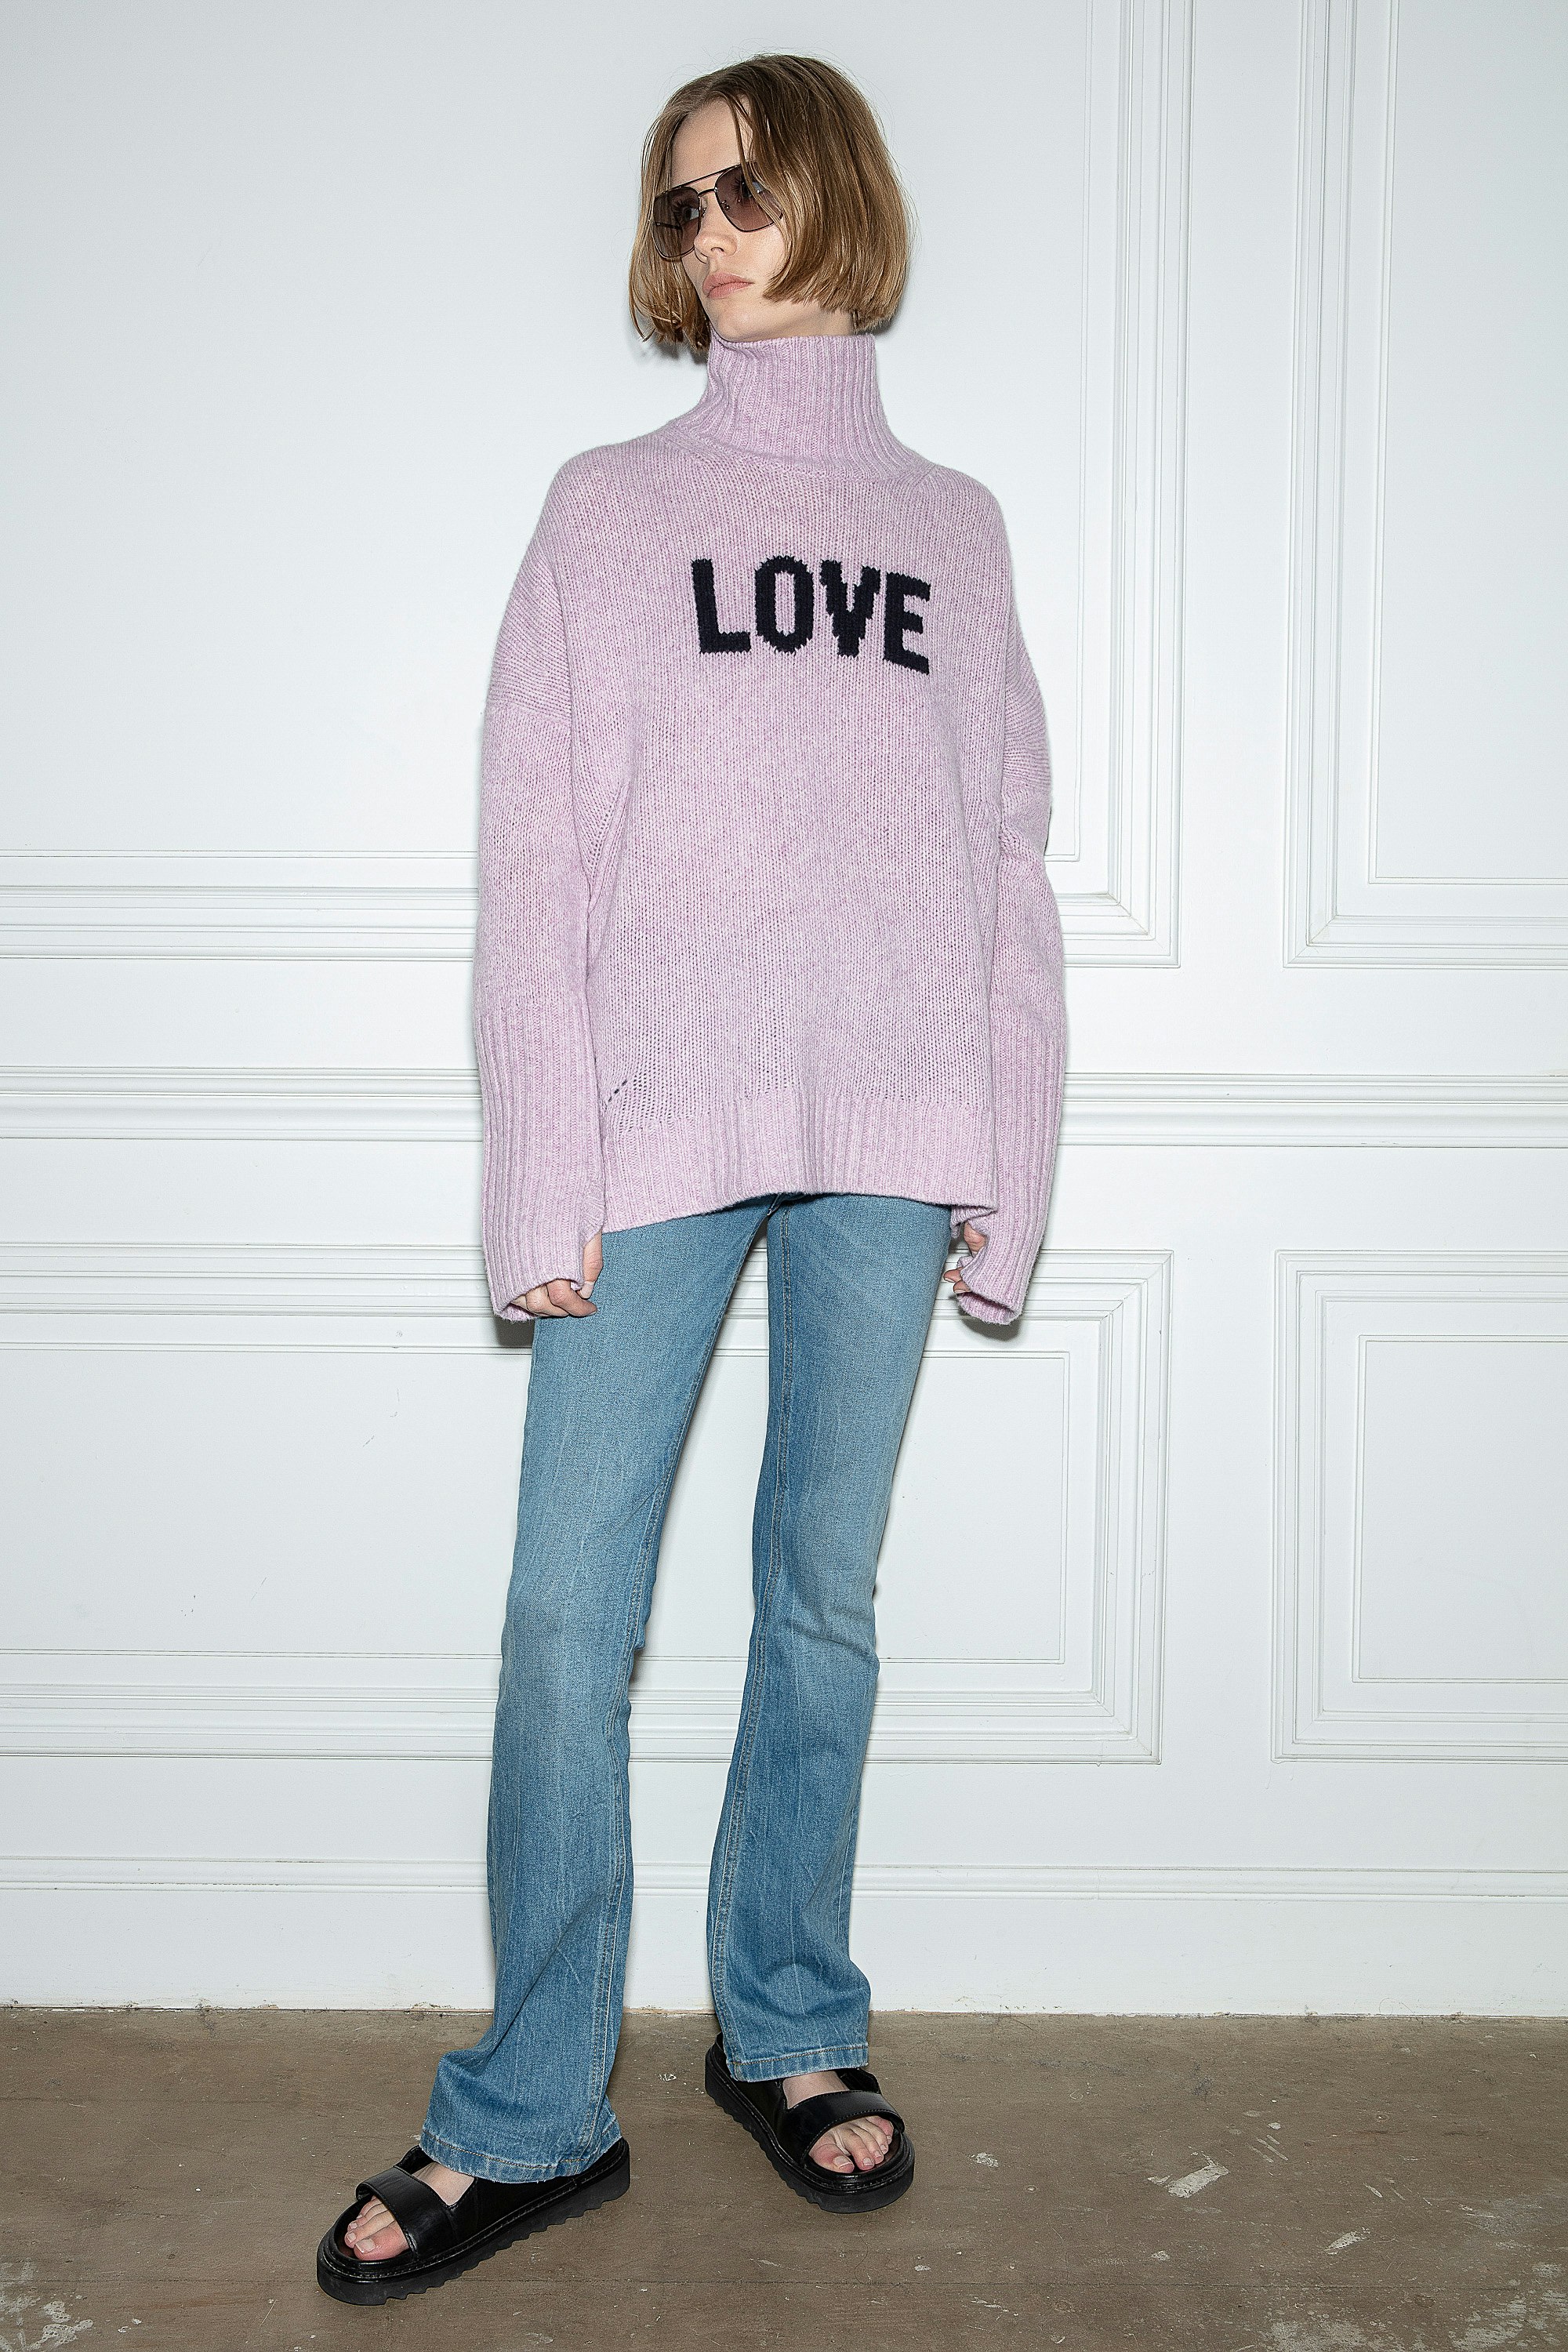 Maglione Alma Love  Maglione in lana merino rosa chiaro, decorato con il mantra “Love” a contrasto e collo alto, Donna